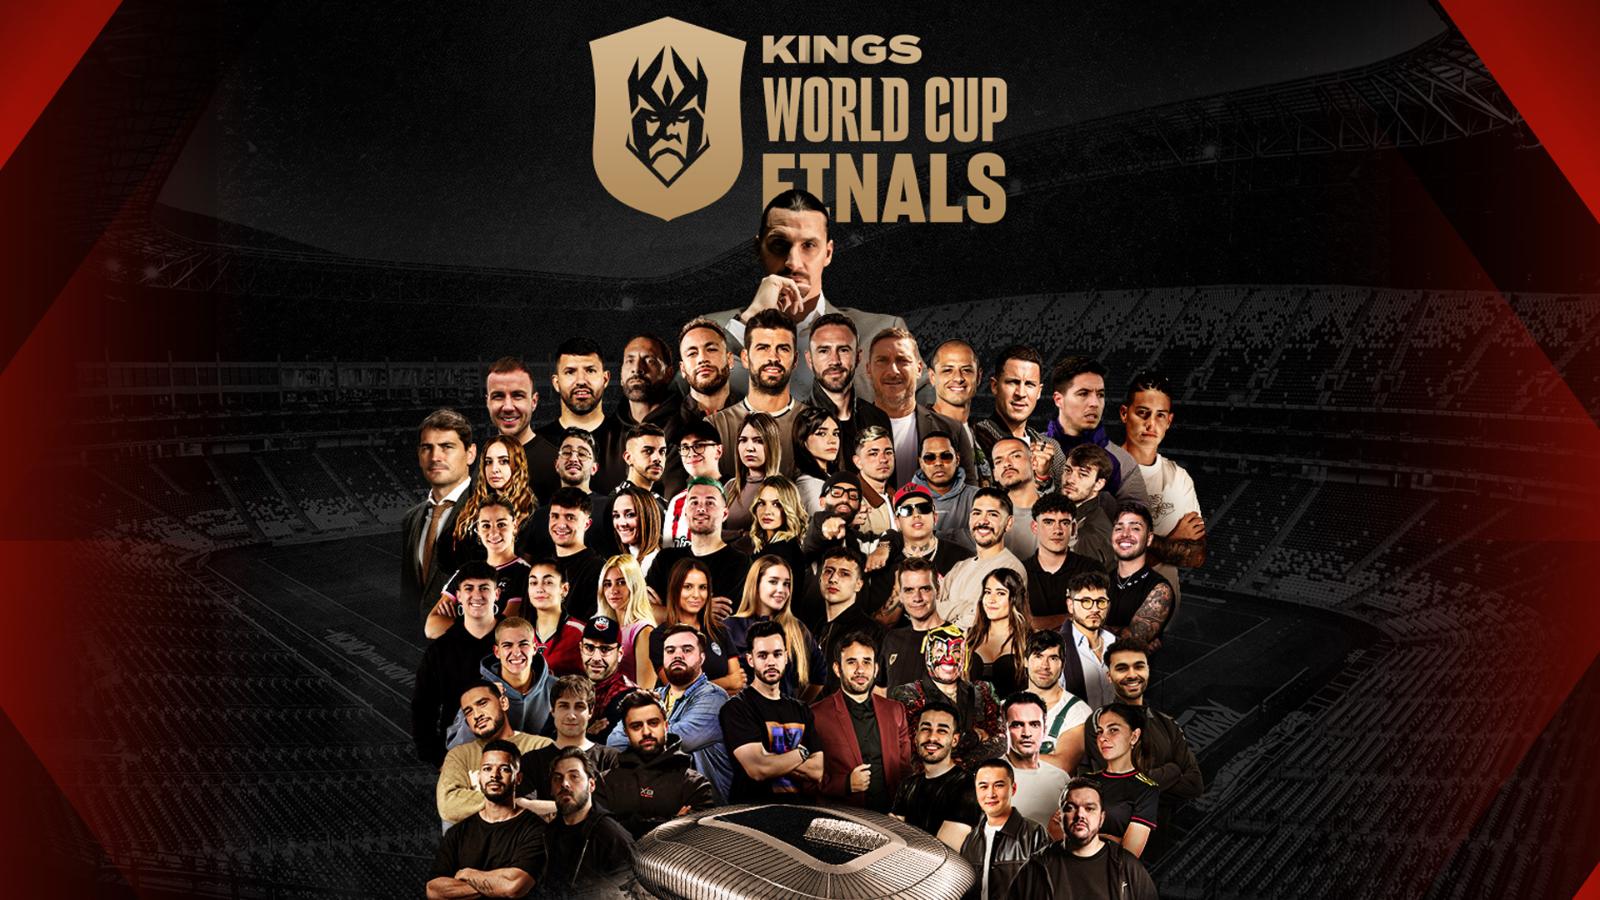 Los 19 futbolistas y exfutbolistas famosos que disputarán la Kings World Cup de Ibai y Piqué